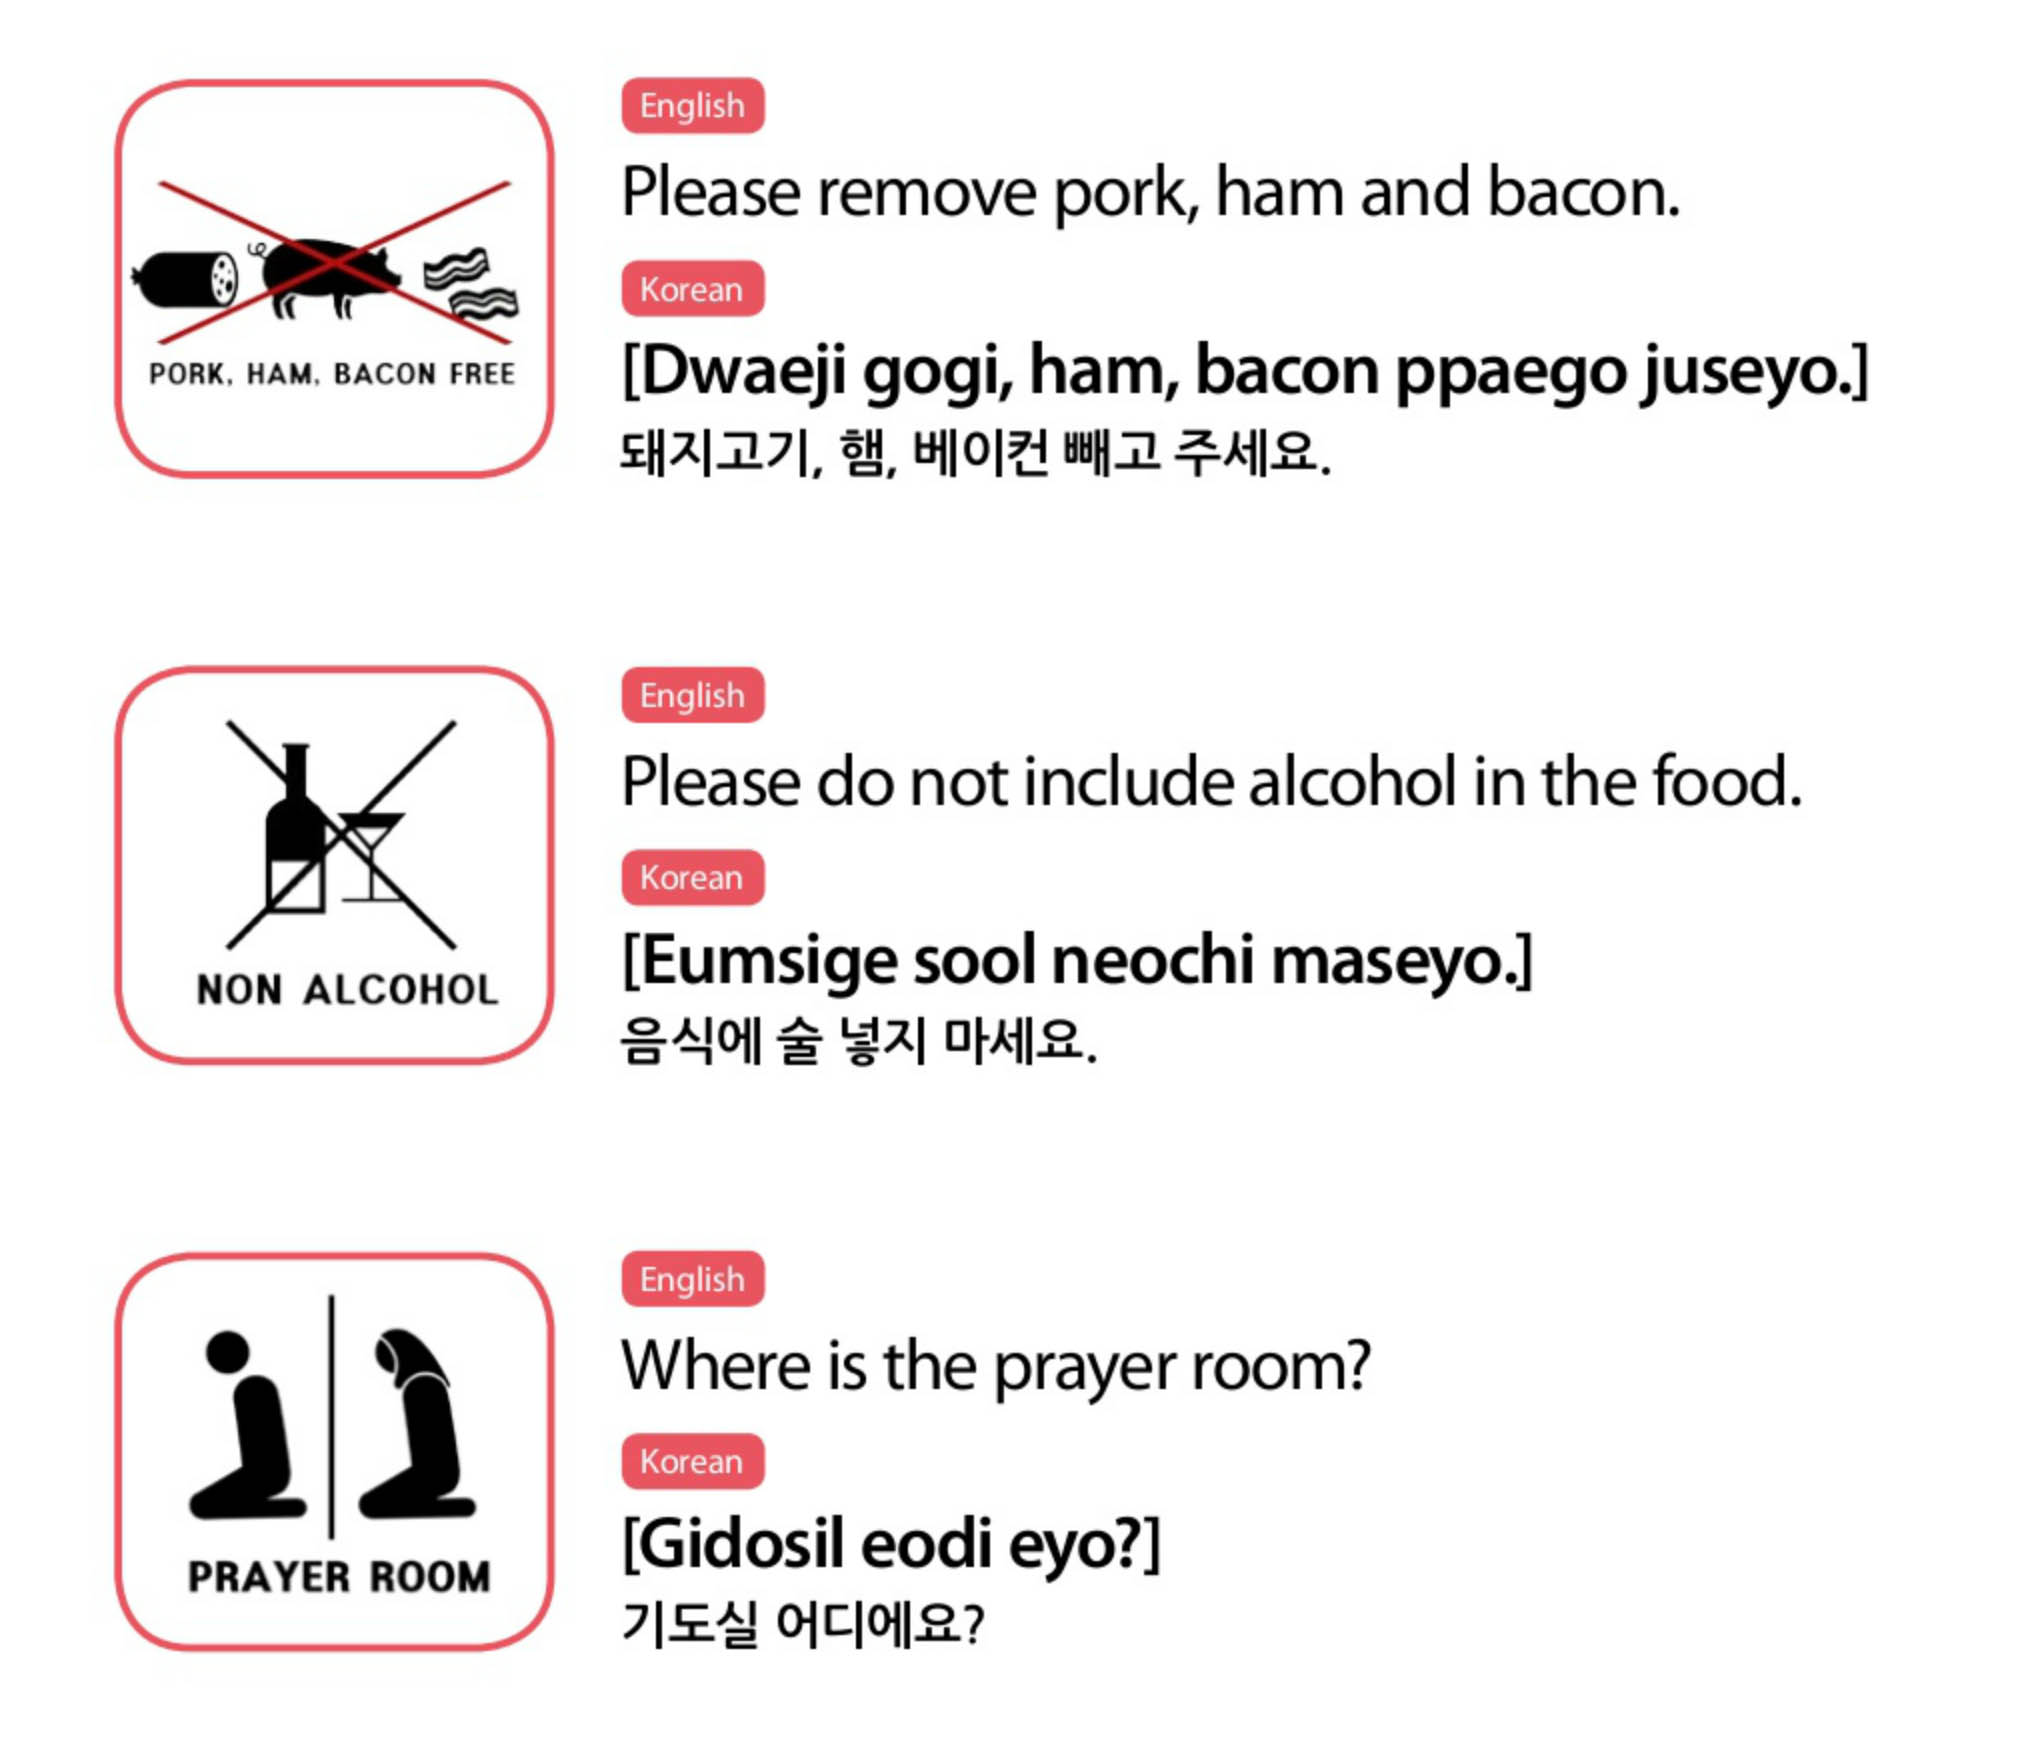 Muslim Friendly Restaurants Guide in Korea